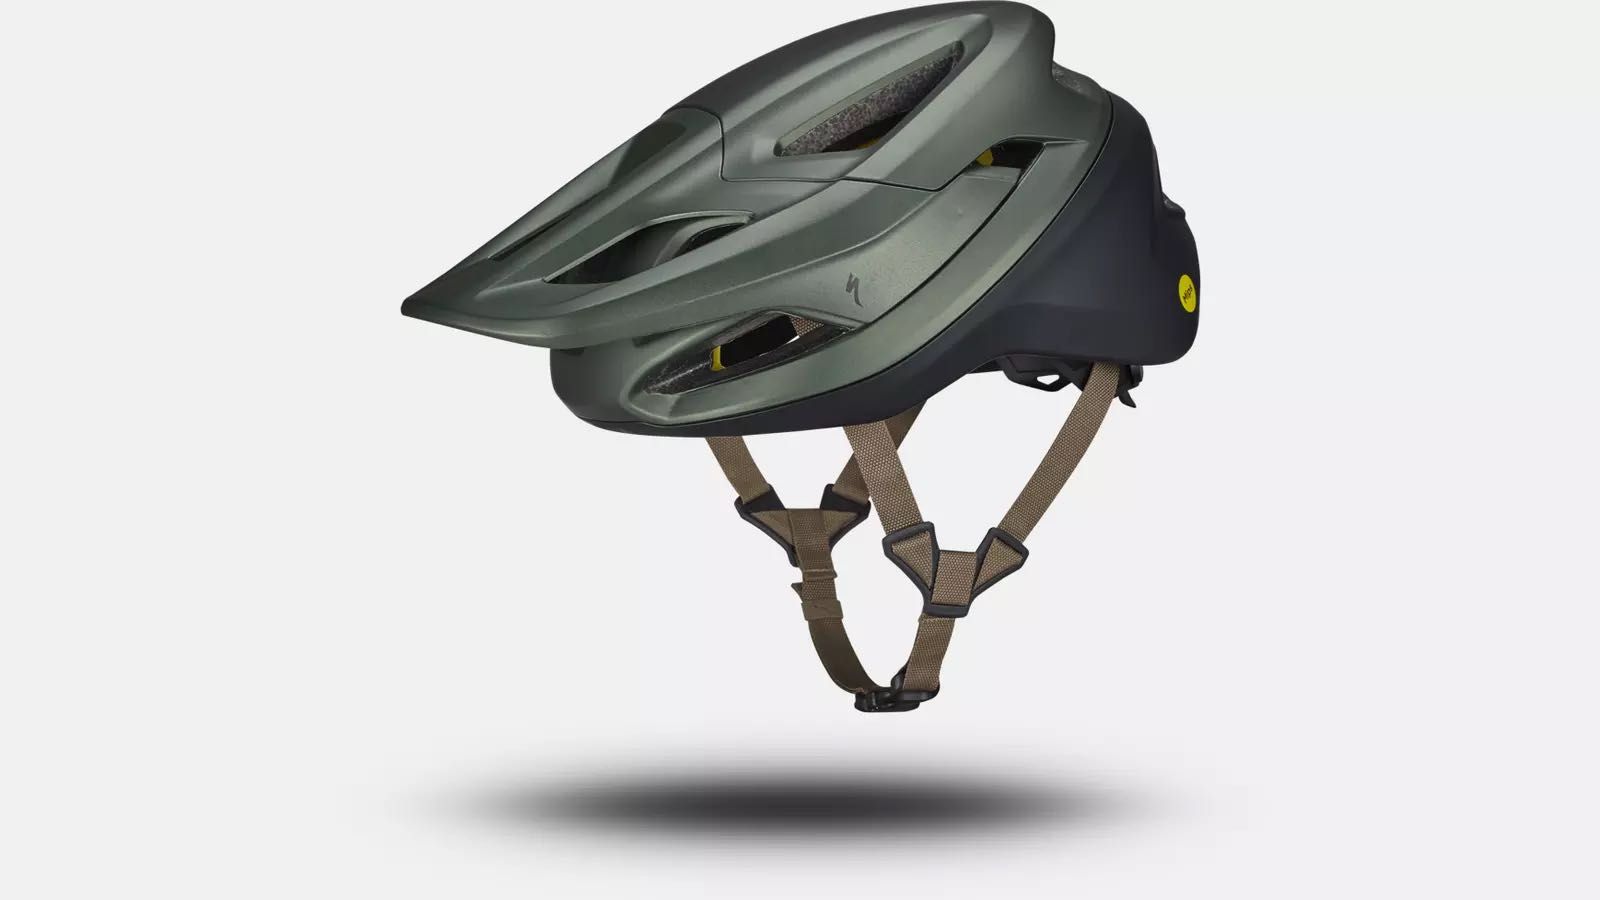 Capacete bicicleta Specialized Camber XS. Novo, nunca usado